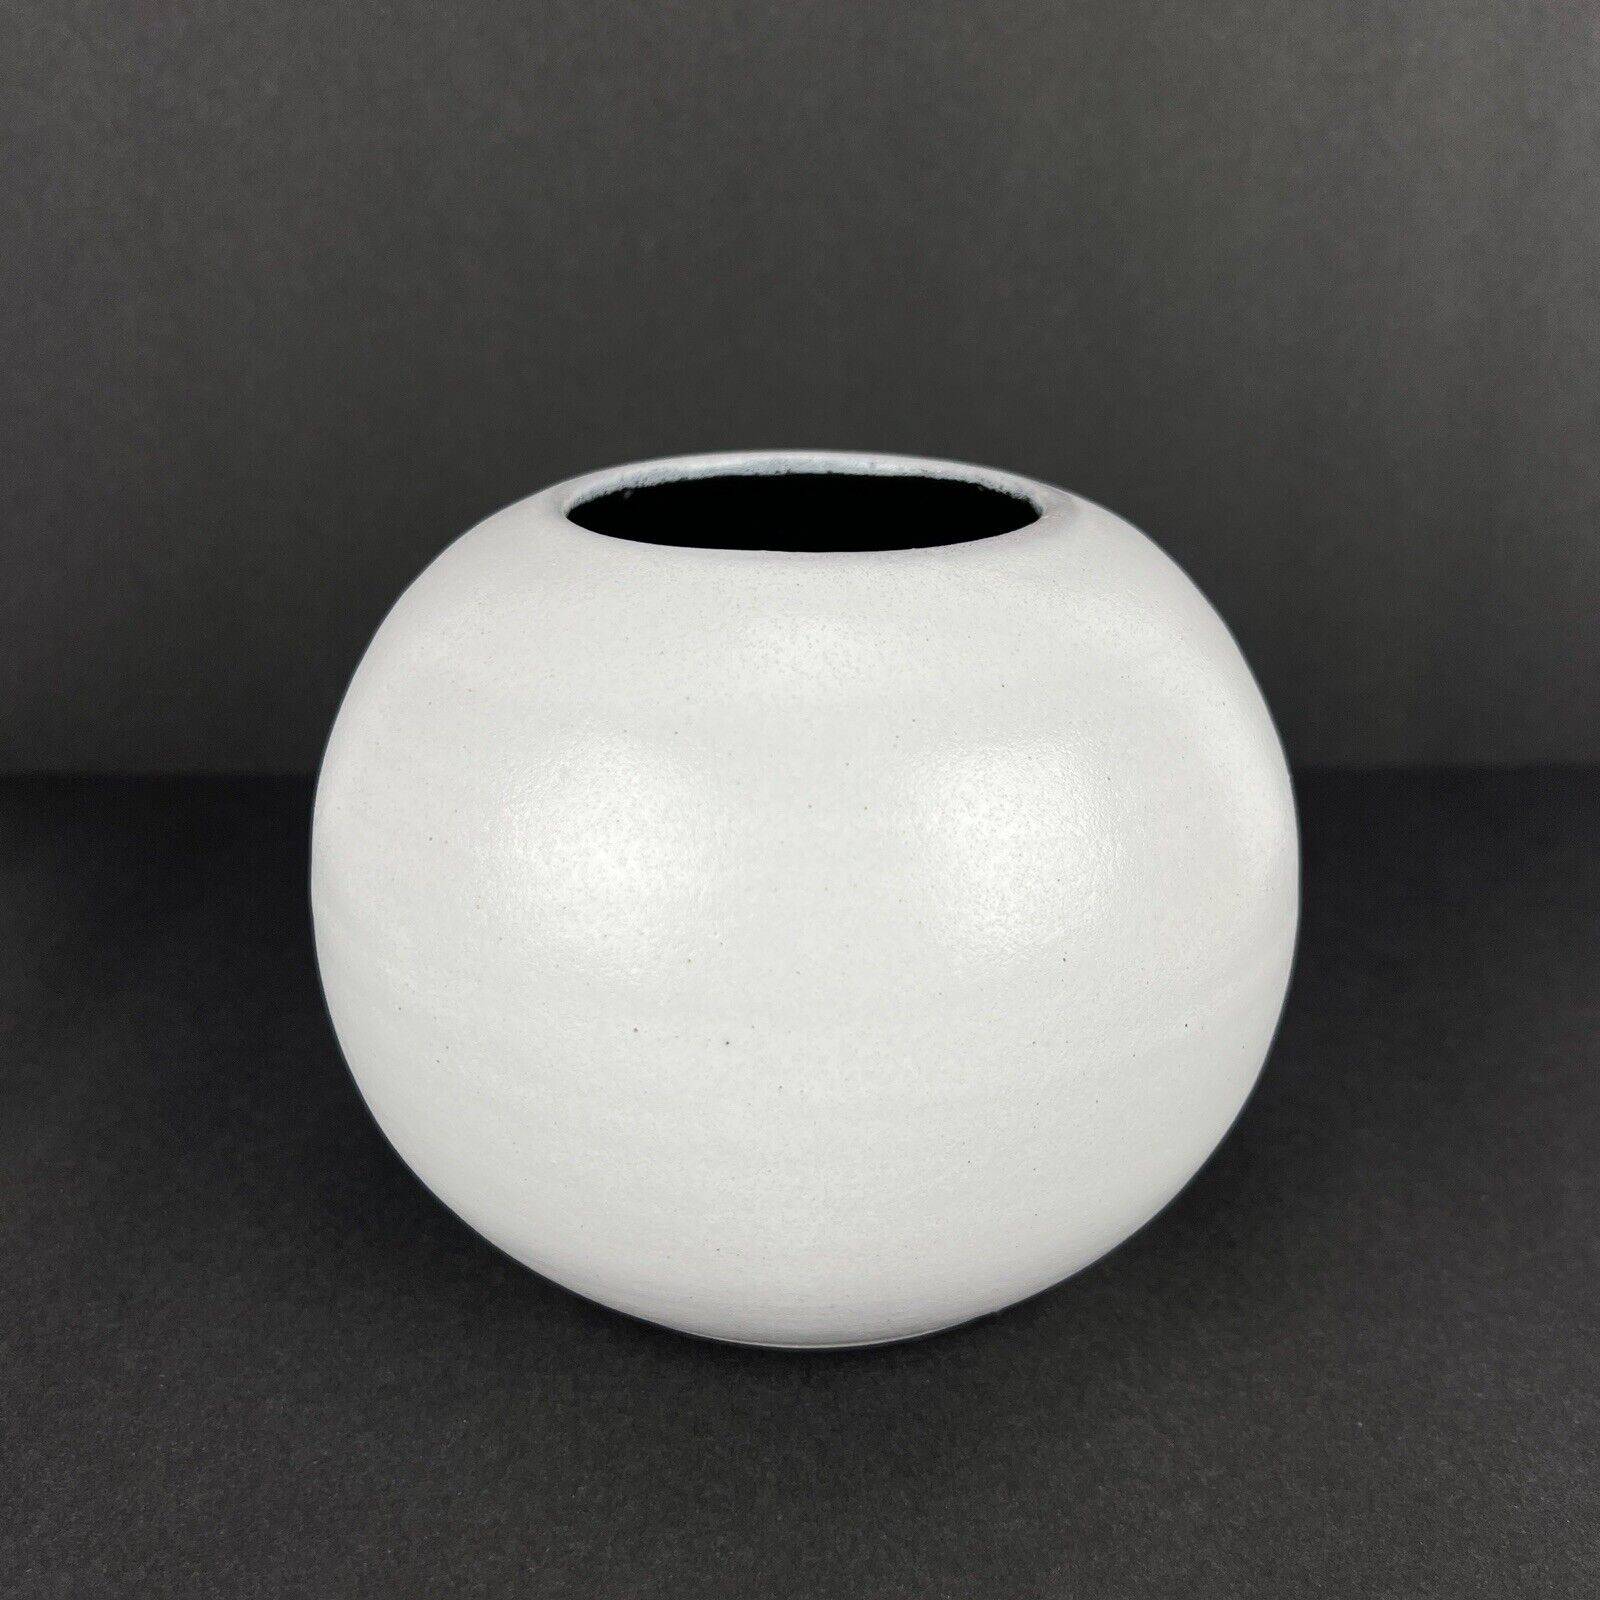 White Orb Vase Studio Pottery 5in